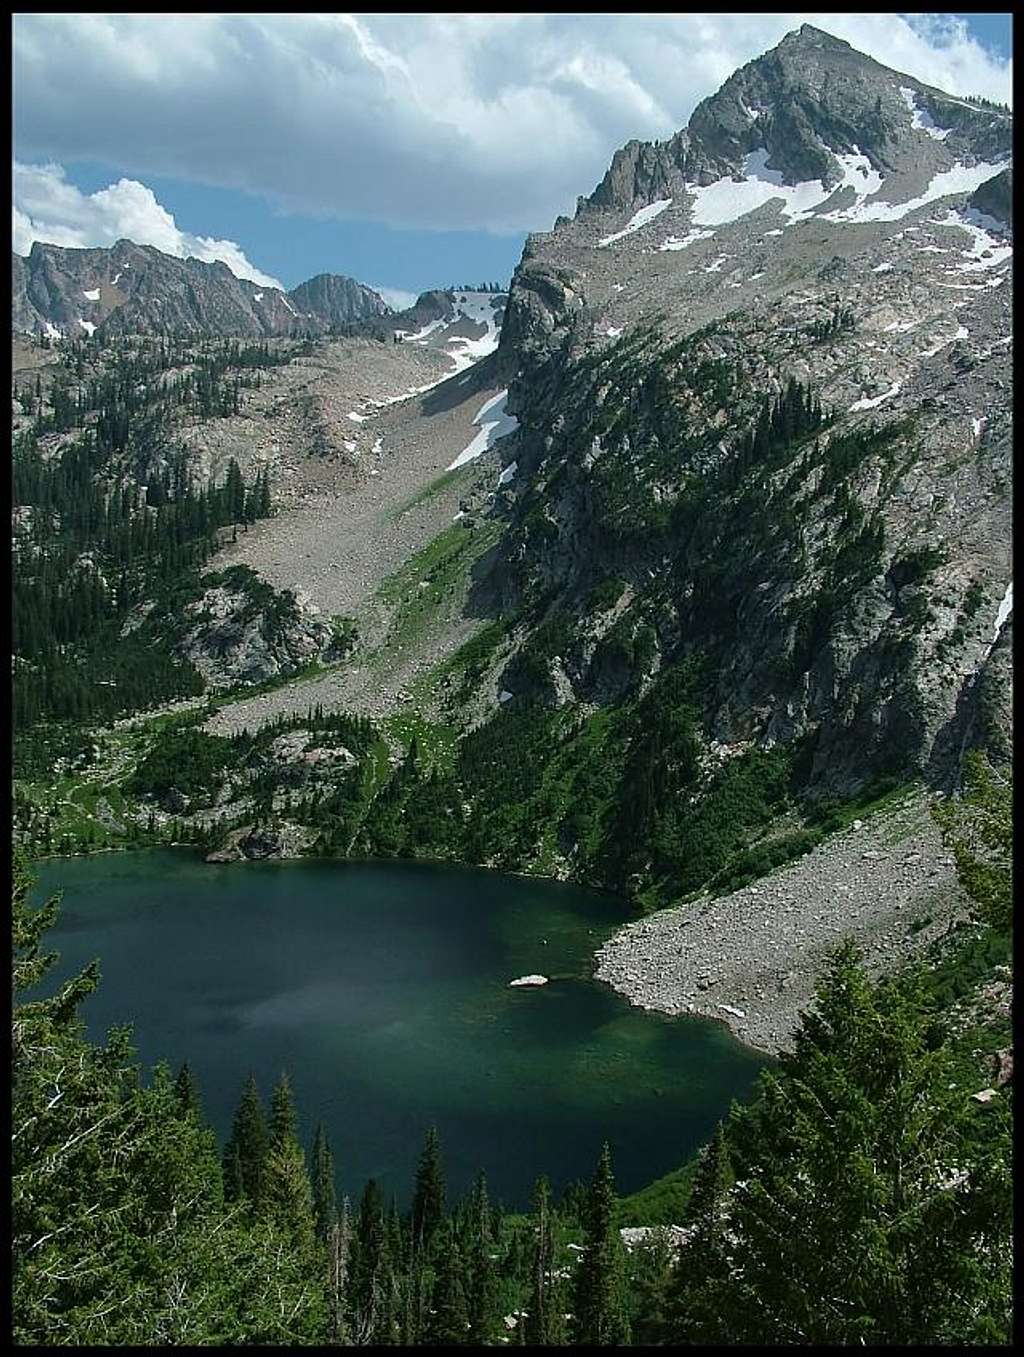 Alpine Lake below Sawtooth Lake